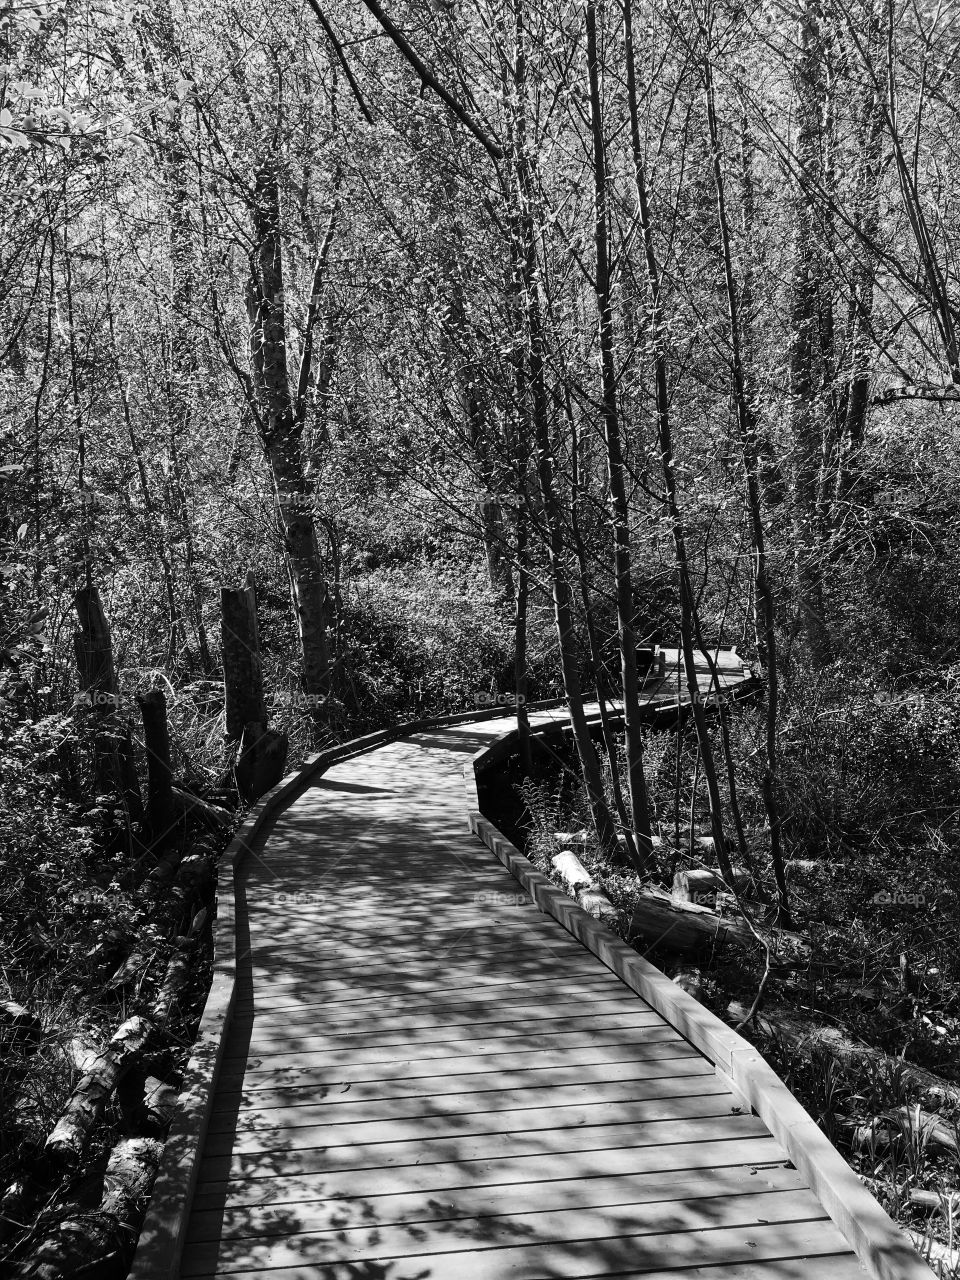 Empty boardwalk in forest